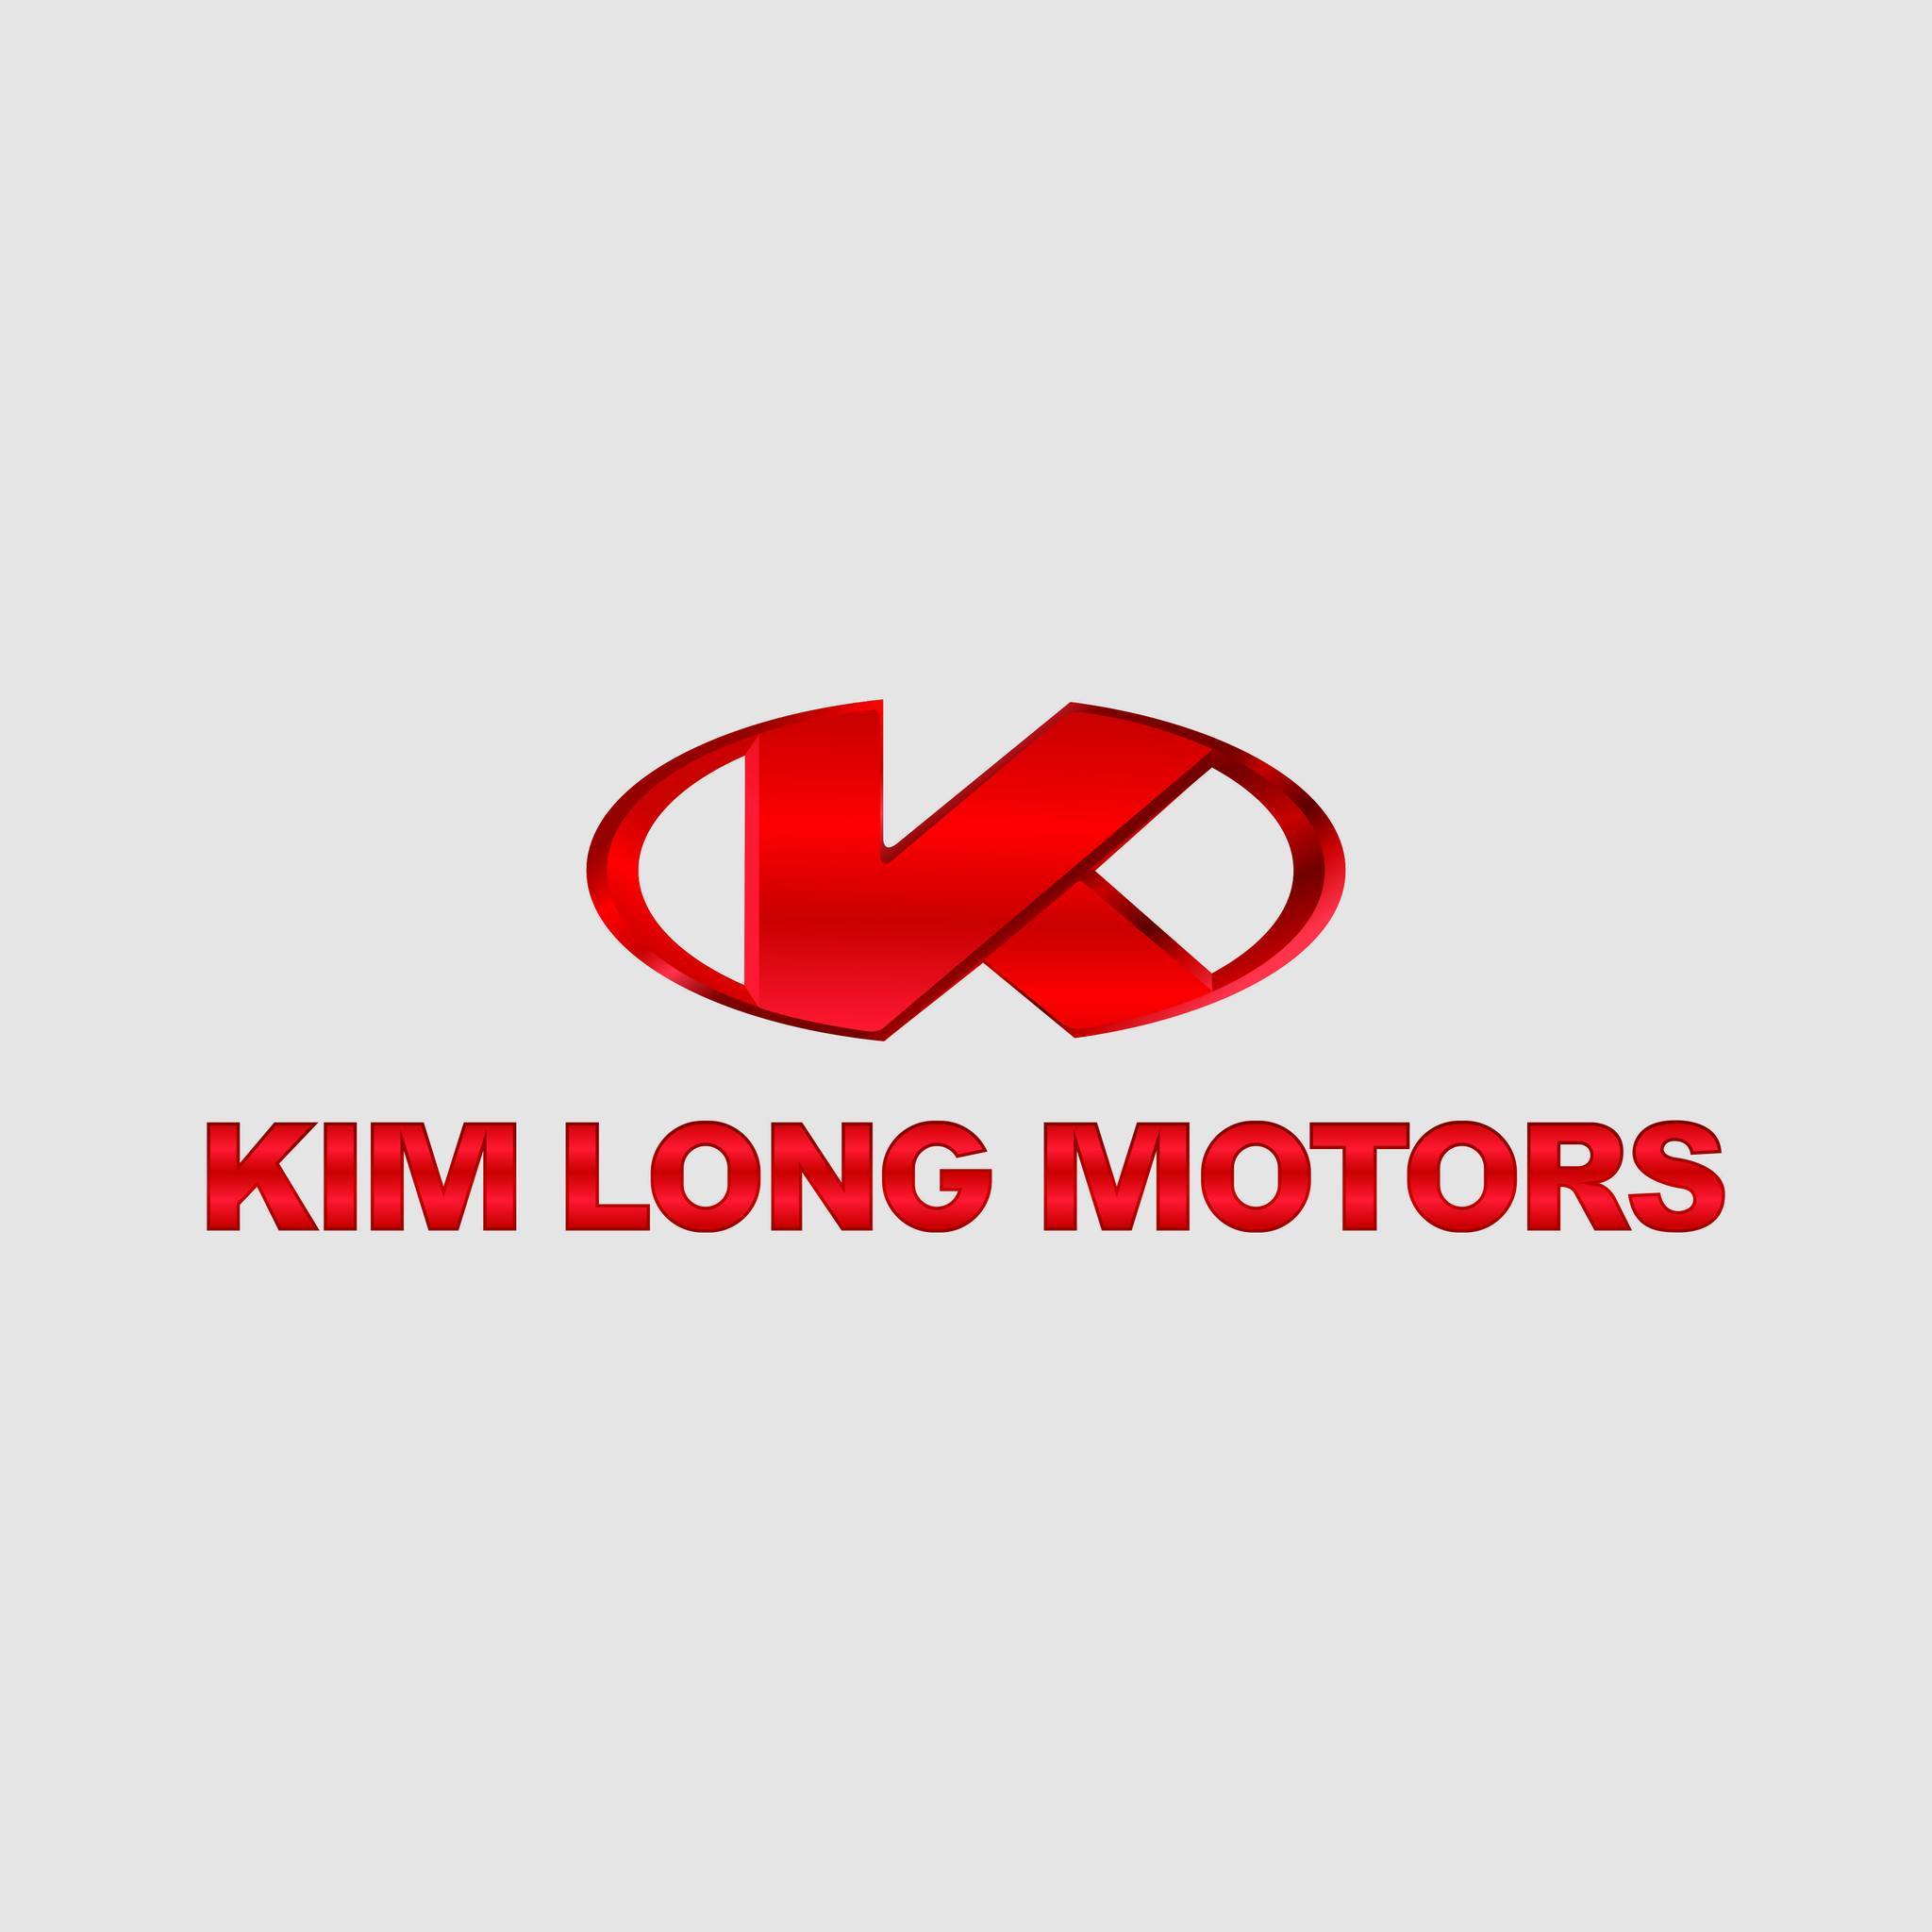 CÔNG TY CỔ PHẦN KIM LONG MOTORS HUẾ